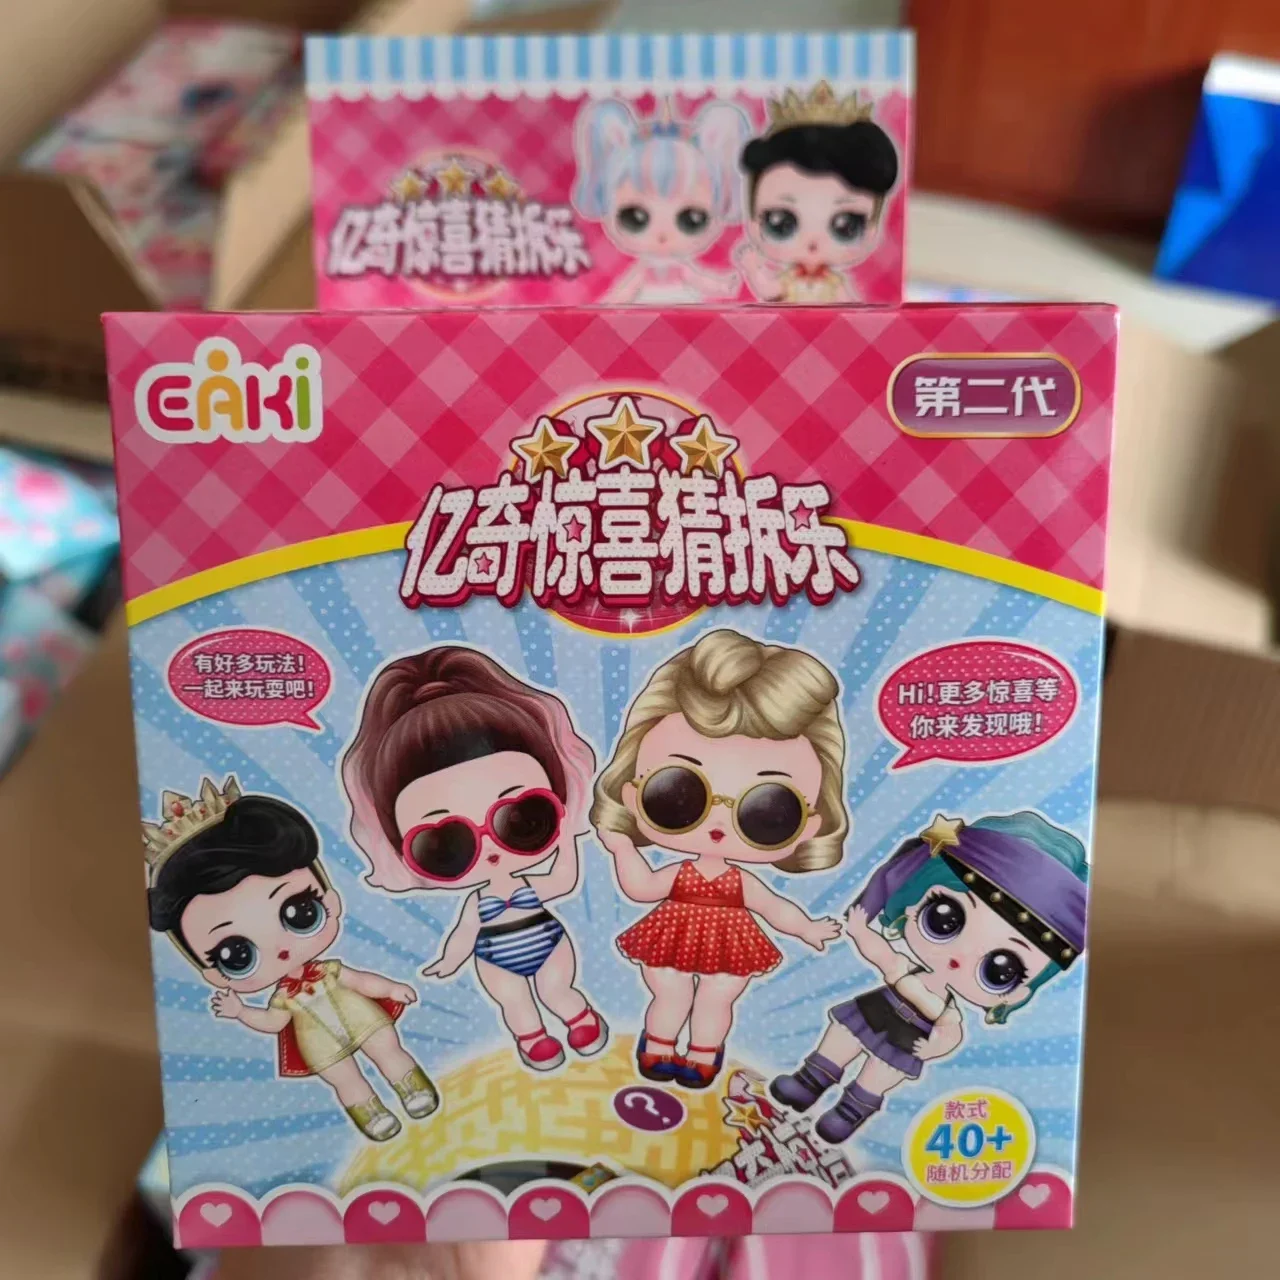 Authentische Anime periphere Überraschung Demontage Ball Mädchen Puppe Cartoon niedlichen Spielzeug modell